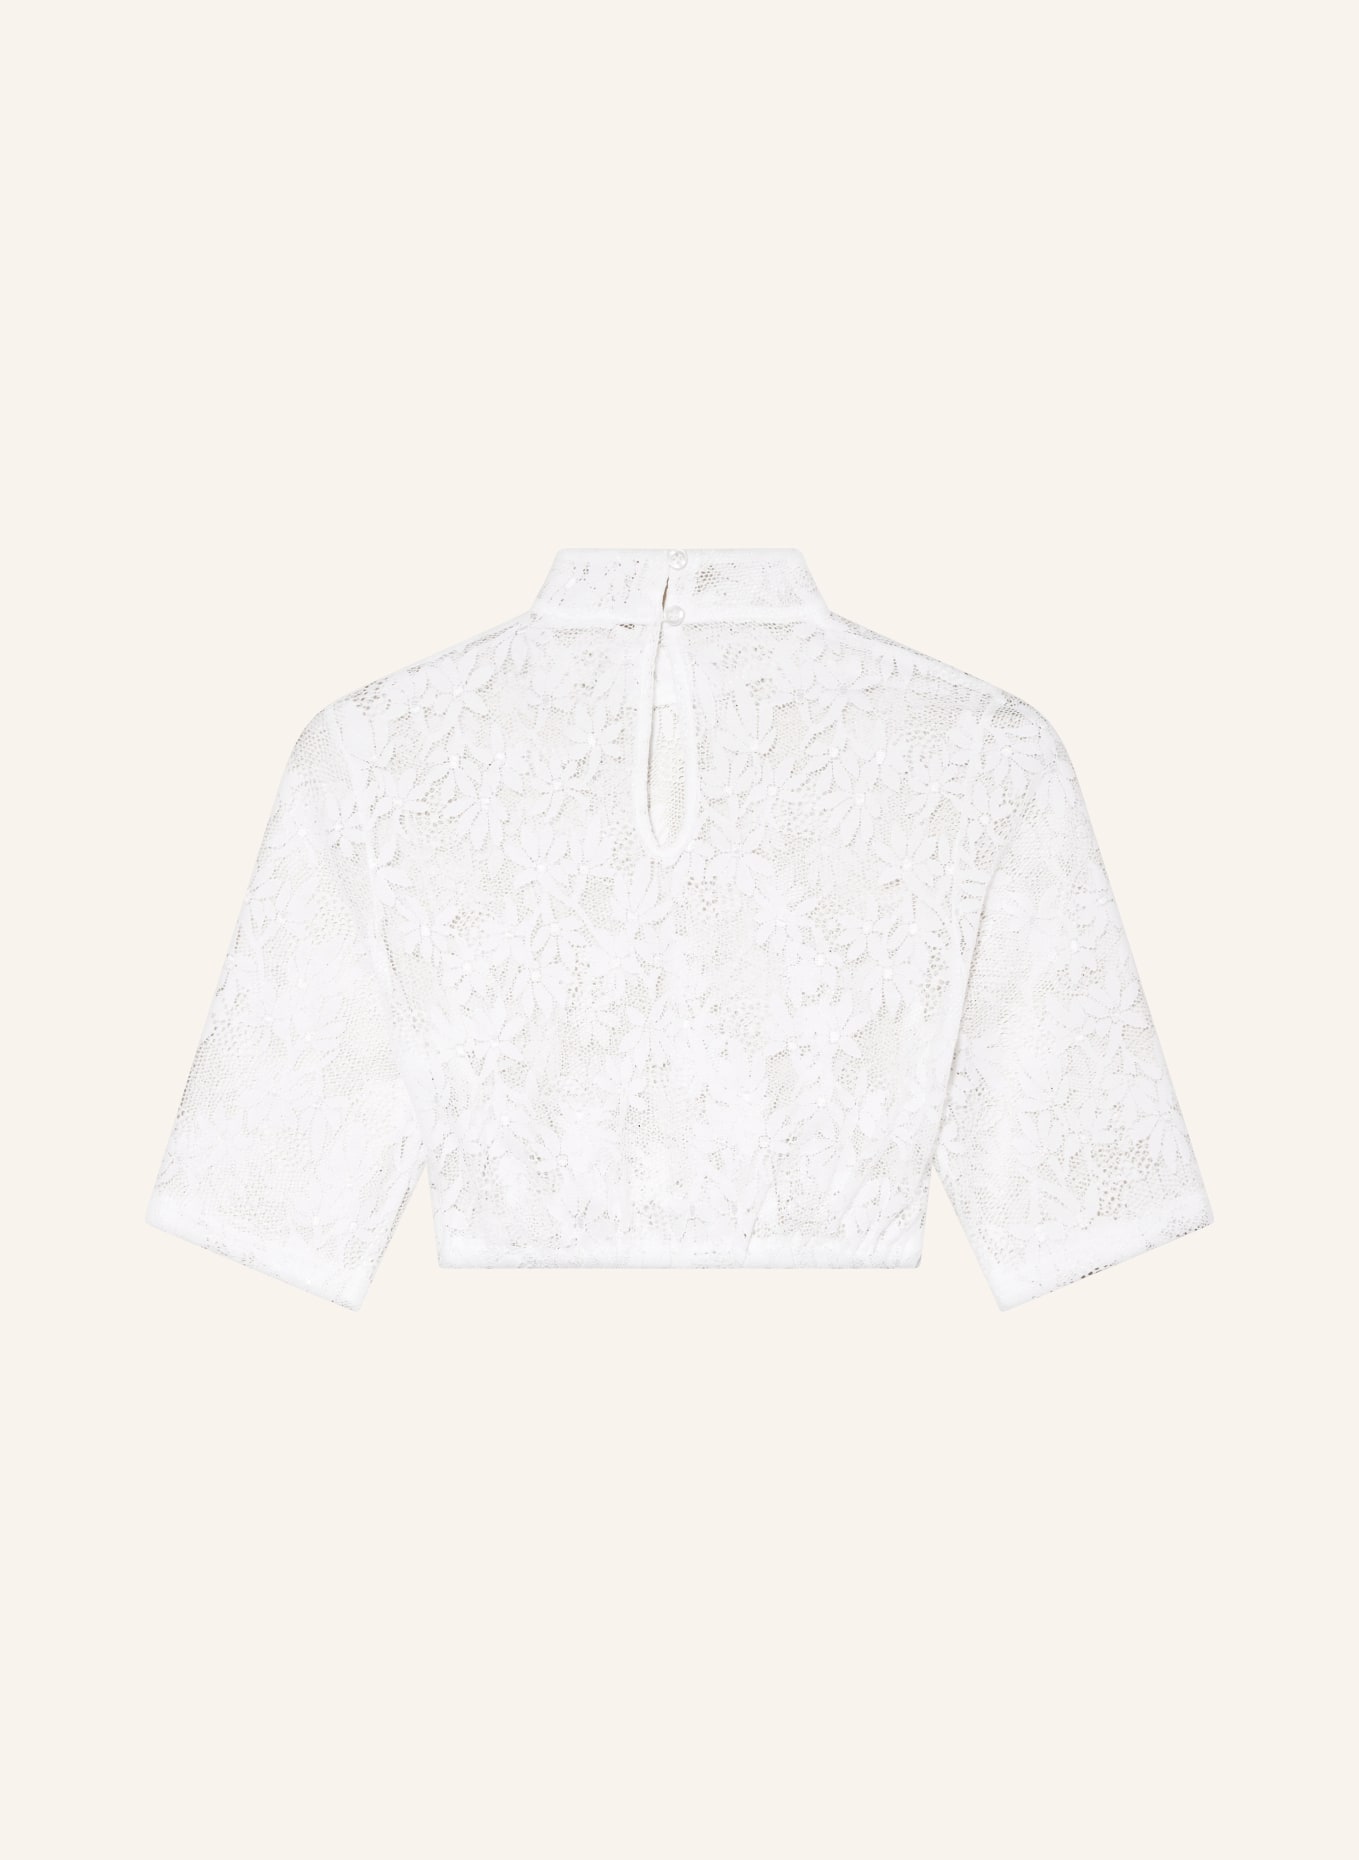 Hammerschmid Dirndl blouse BABSI, Color: WHITE (Image 2)